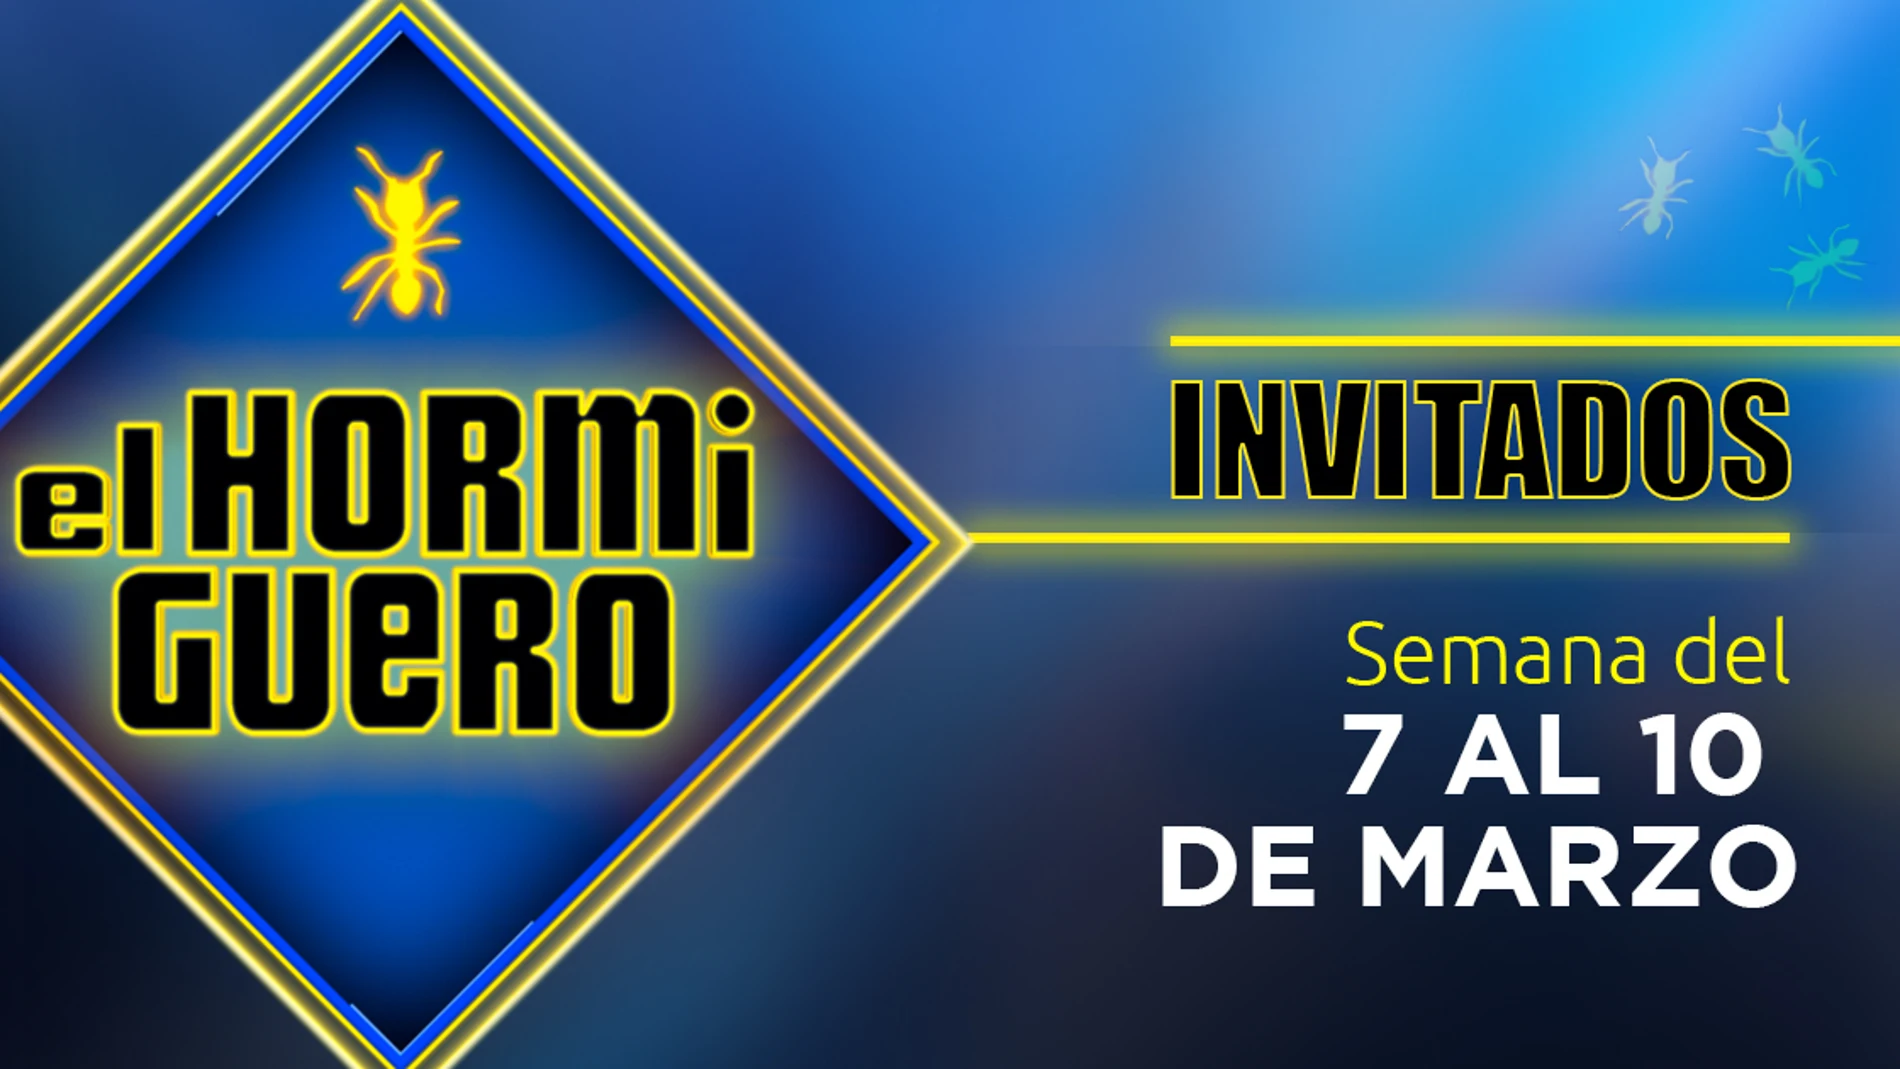 Invitados semana del 7 al 10 de marzo de 'El Hormiguero 3.0' 